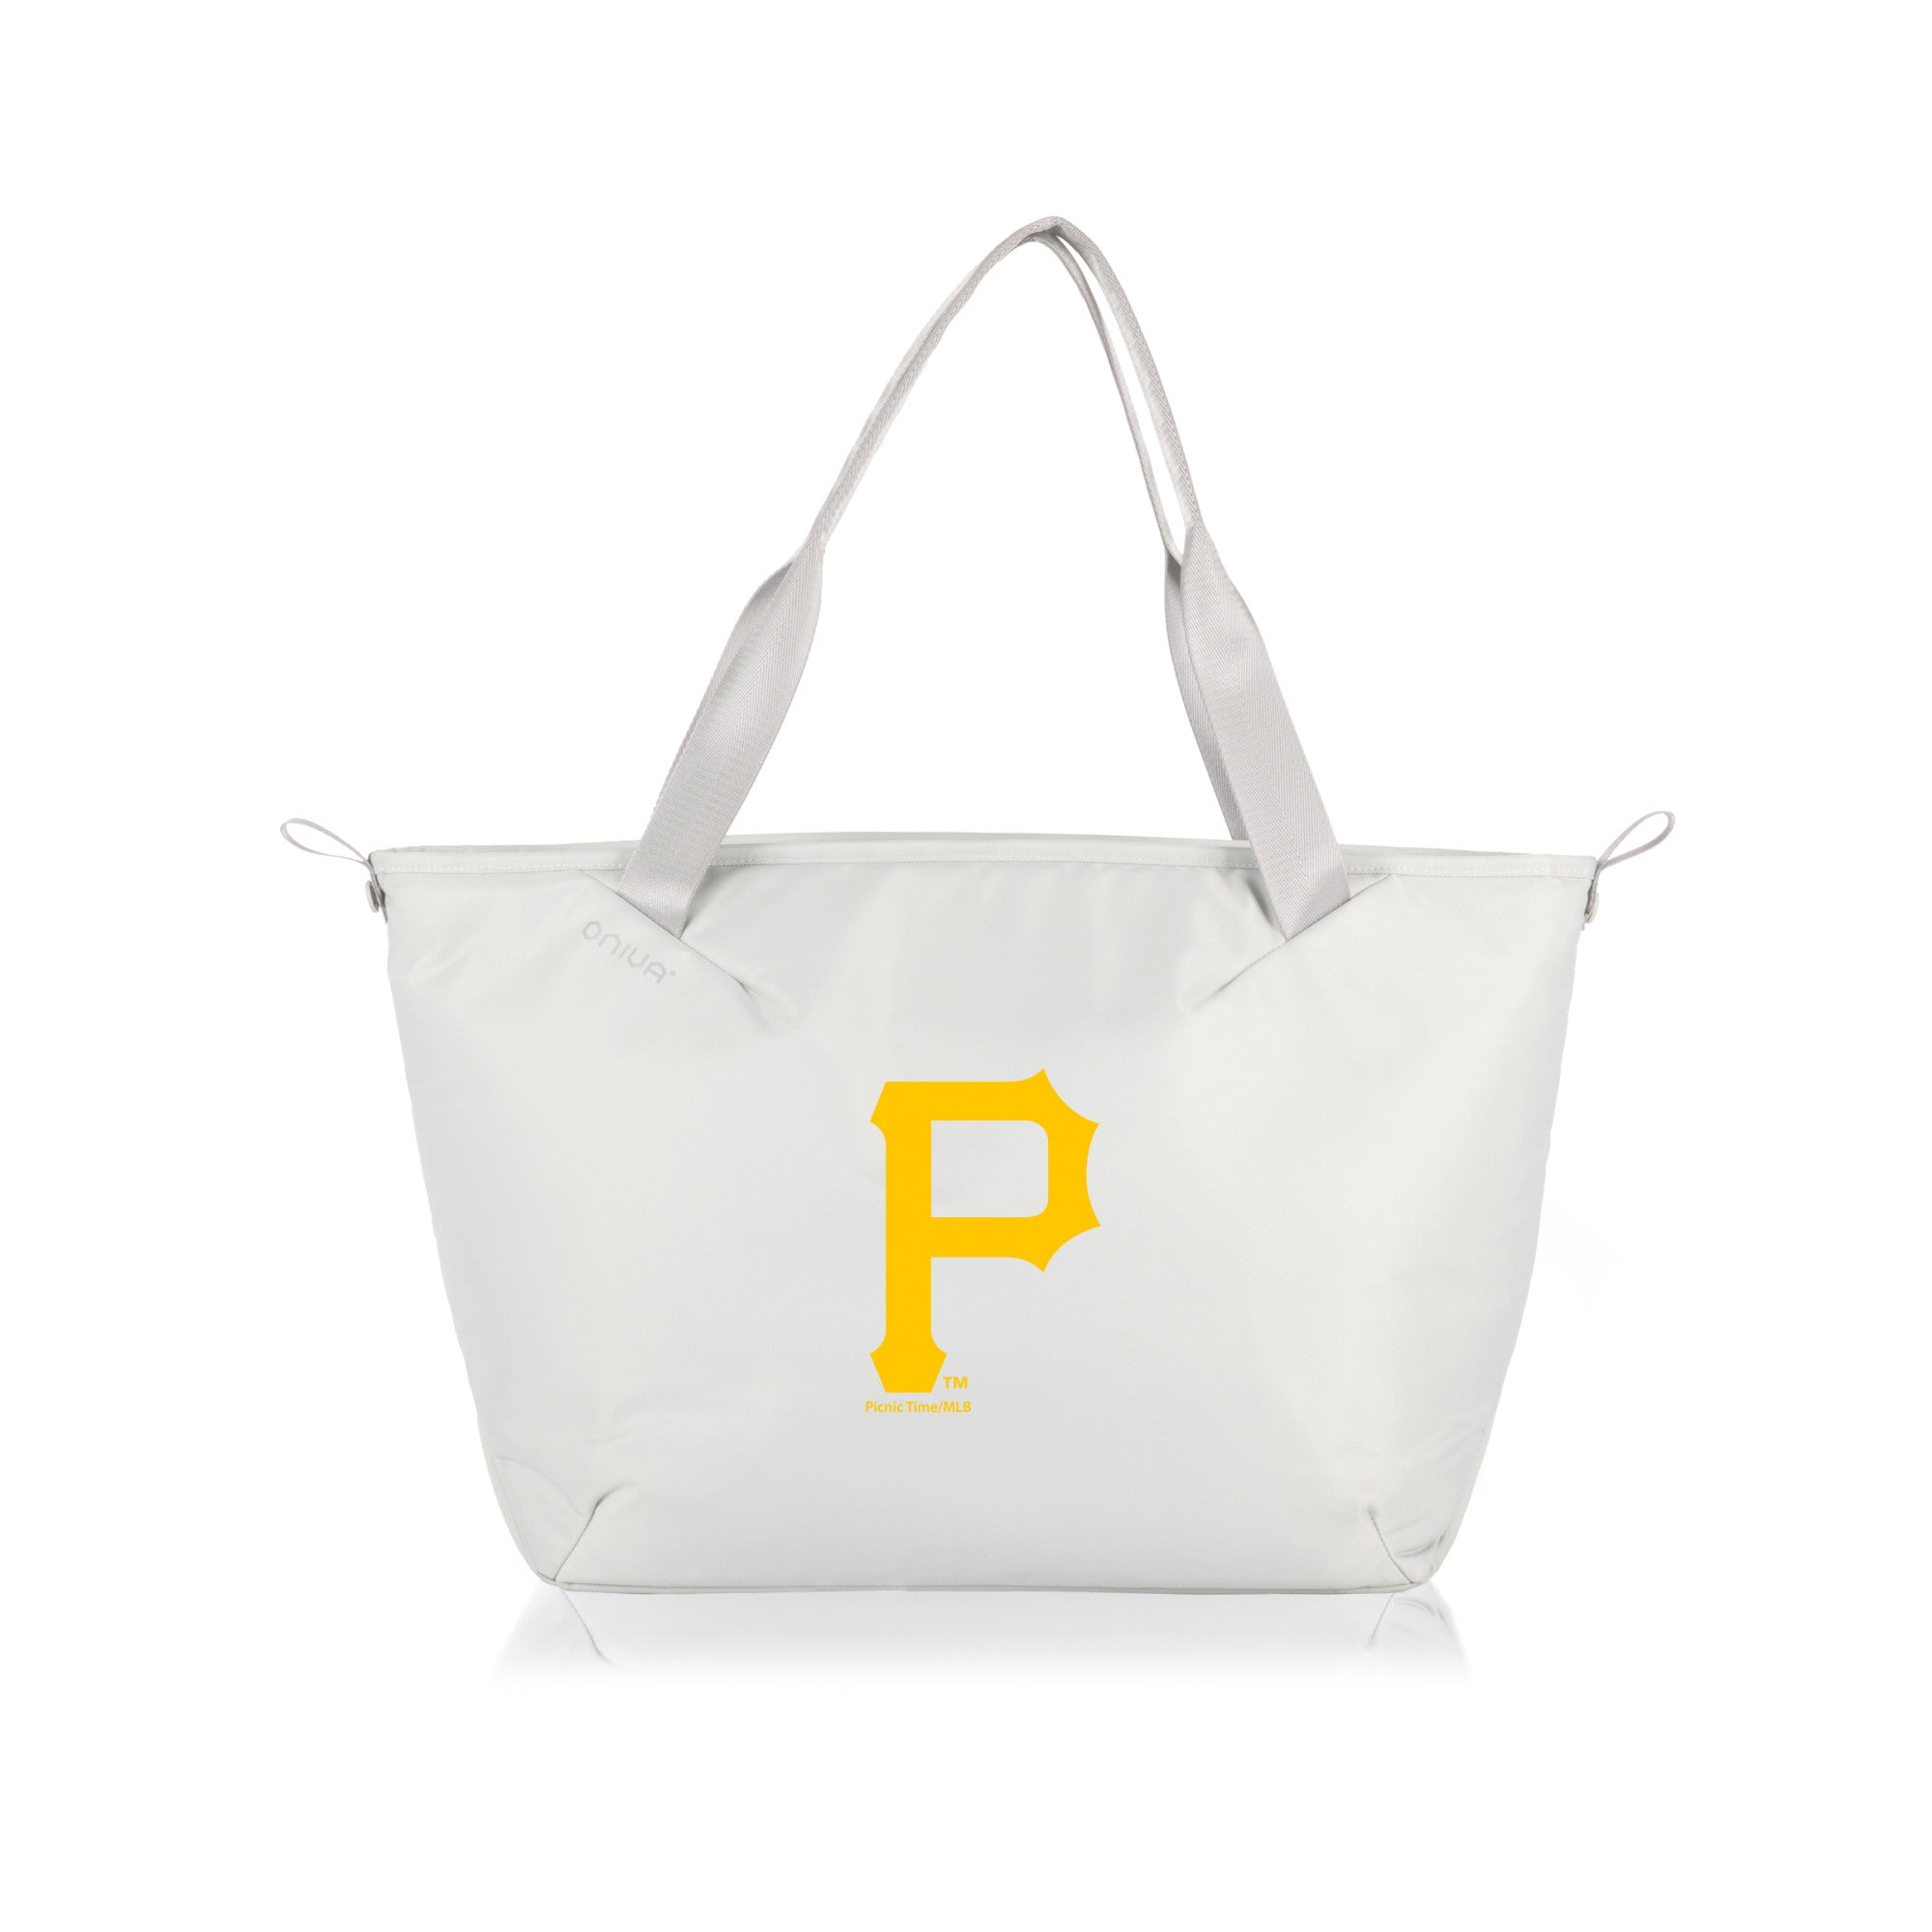 Pittsburgh Pirates - Tarana Cooler Tote Bag